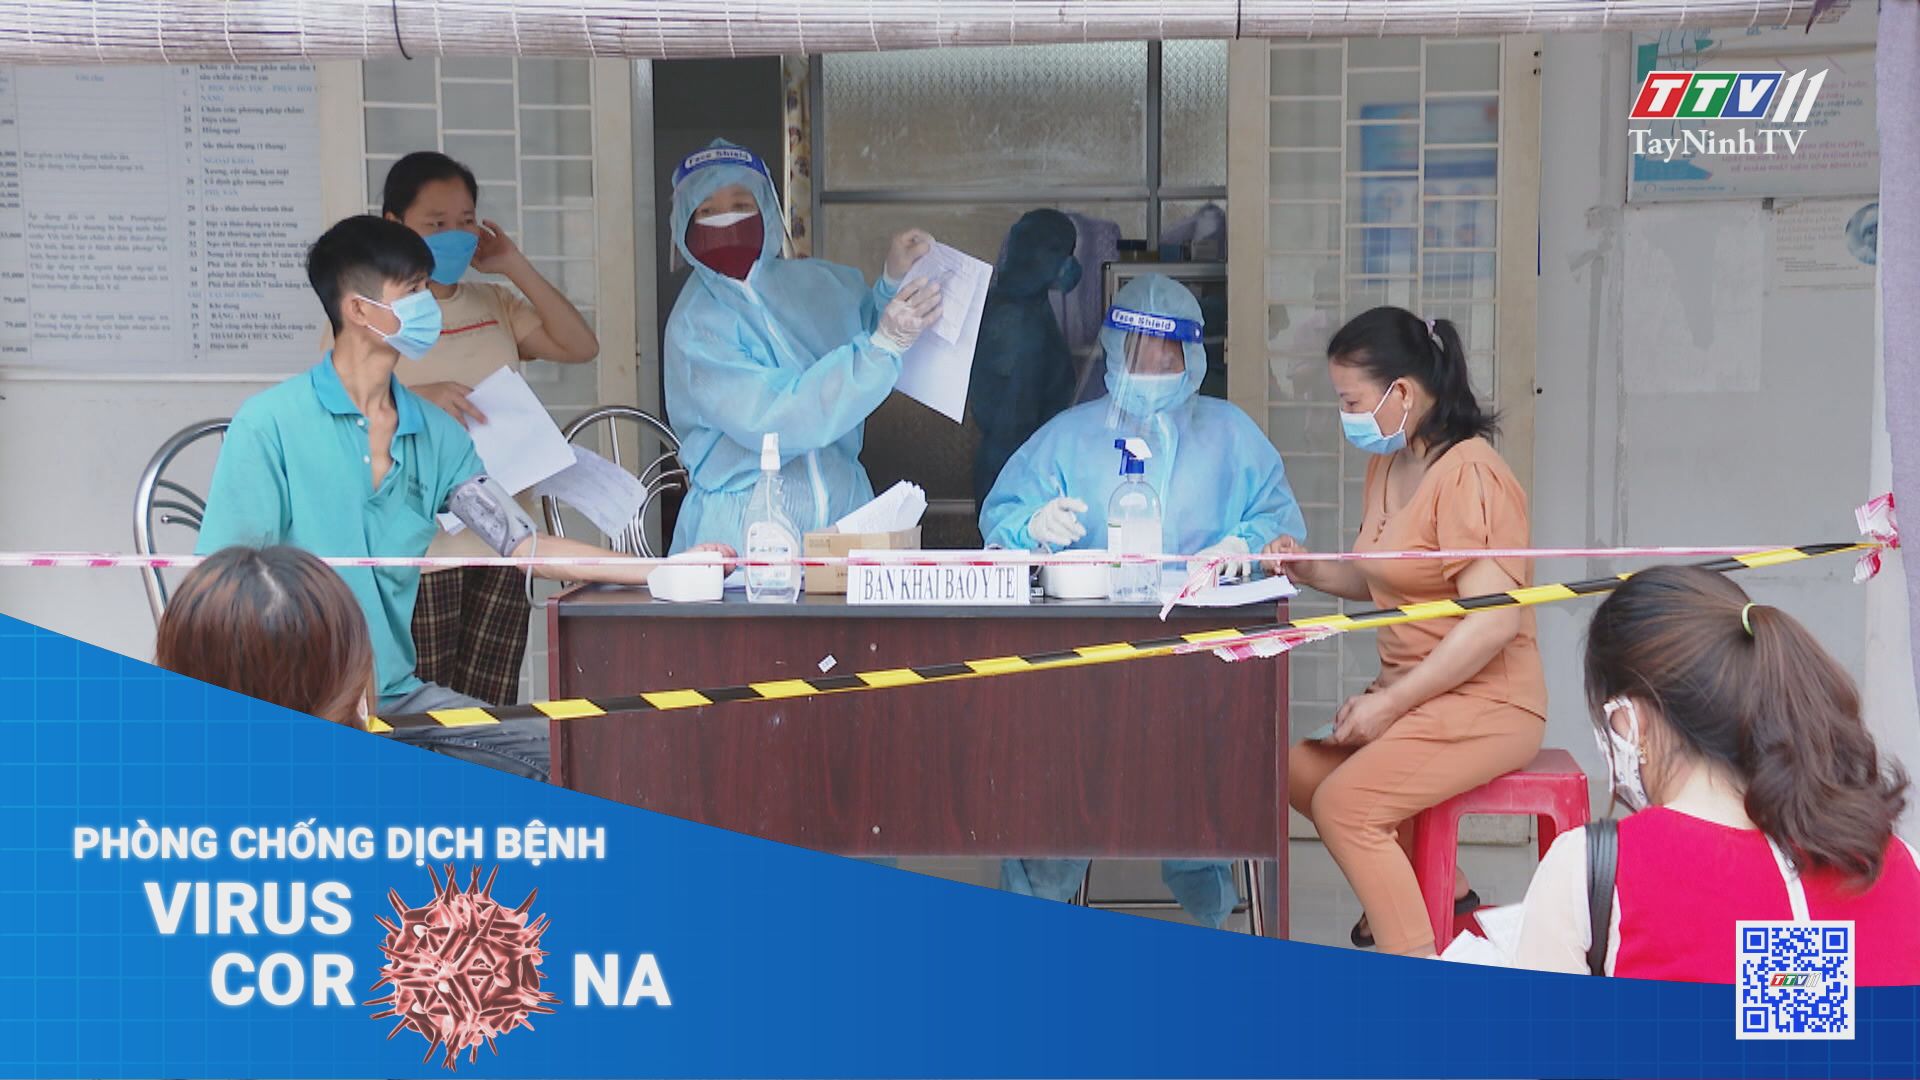 Điều chỉnh quản lý ca nhiễm COVID-19 tại Tây Ninh | THÔNG TIN DỊCH COVID-19 | TayNinhTV